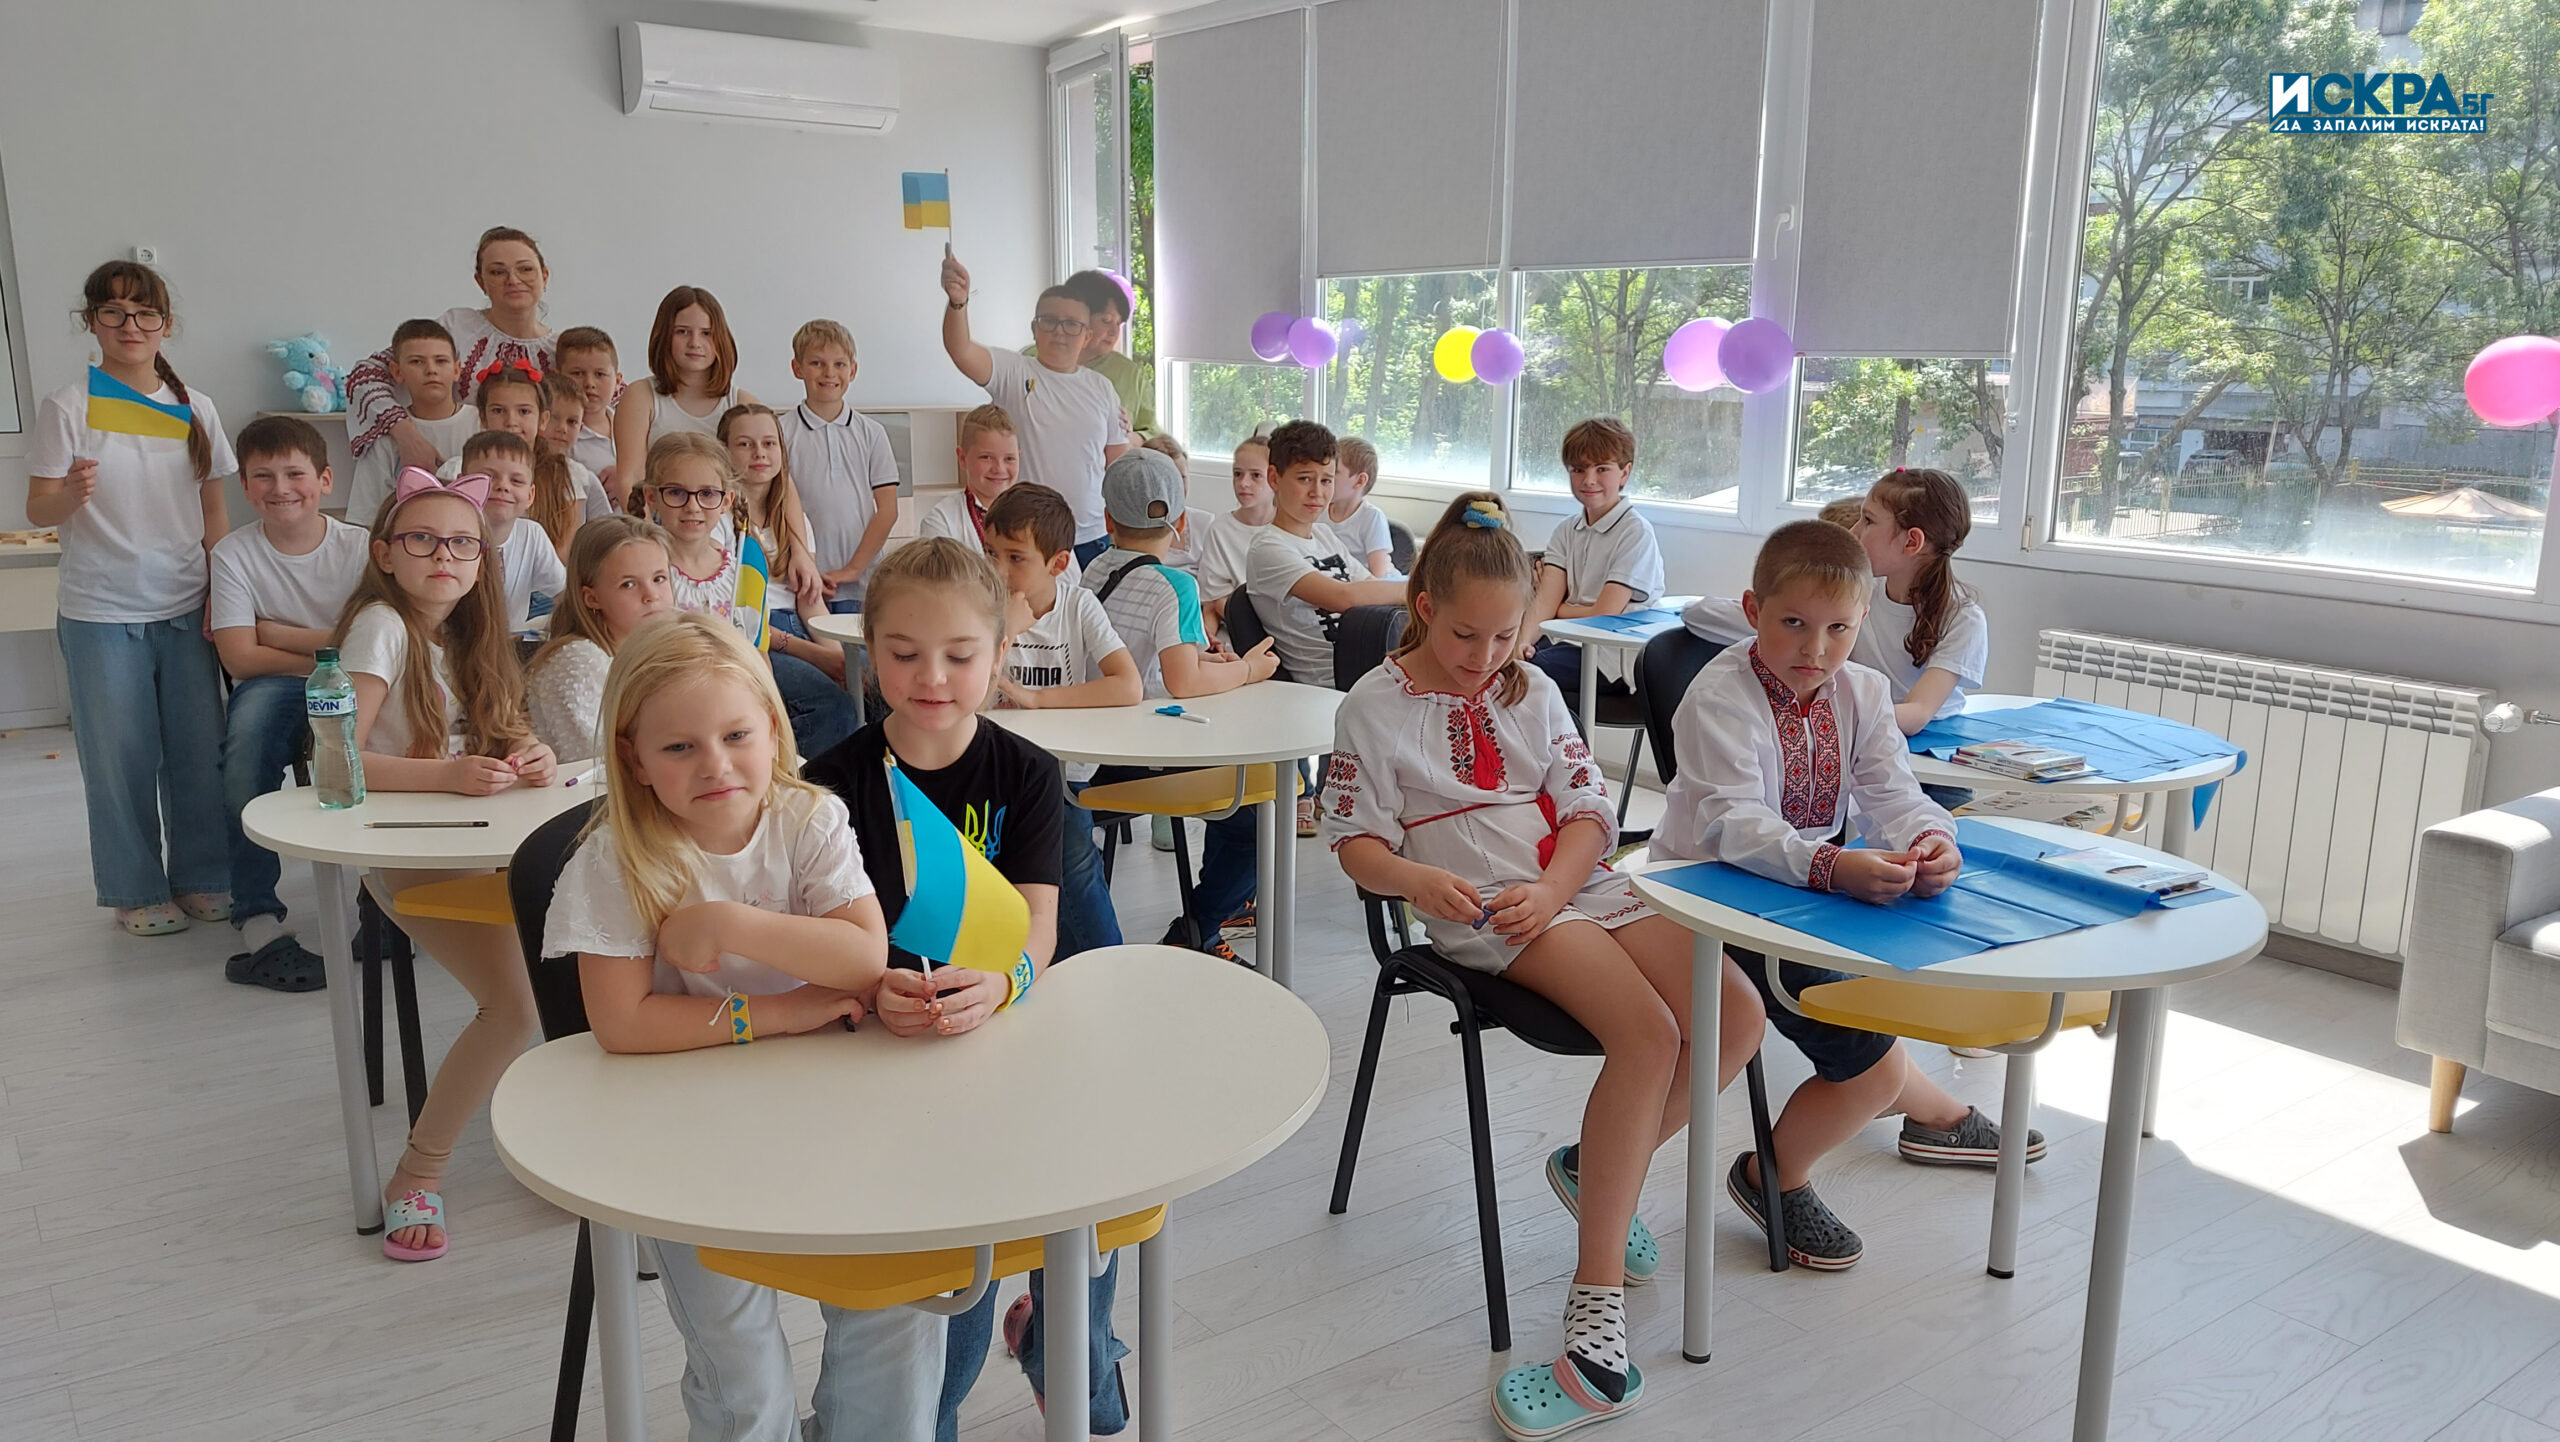 Обучителен център с украински деца. Снимка: Искра.бг
Днес откриха новия Обучителен